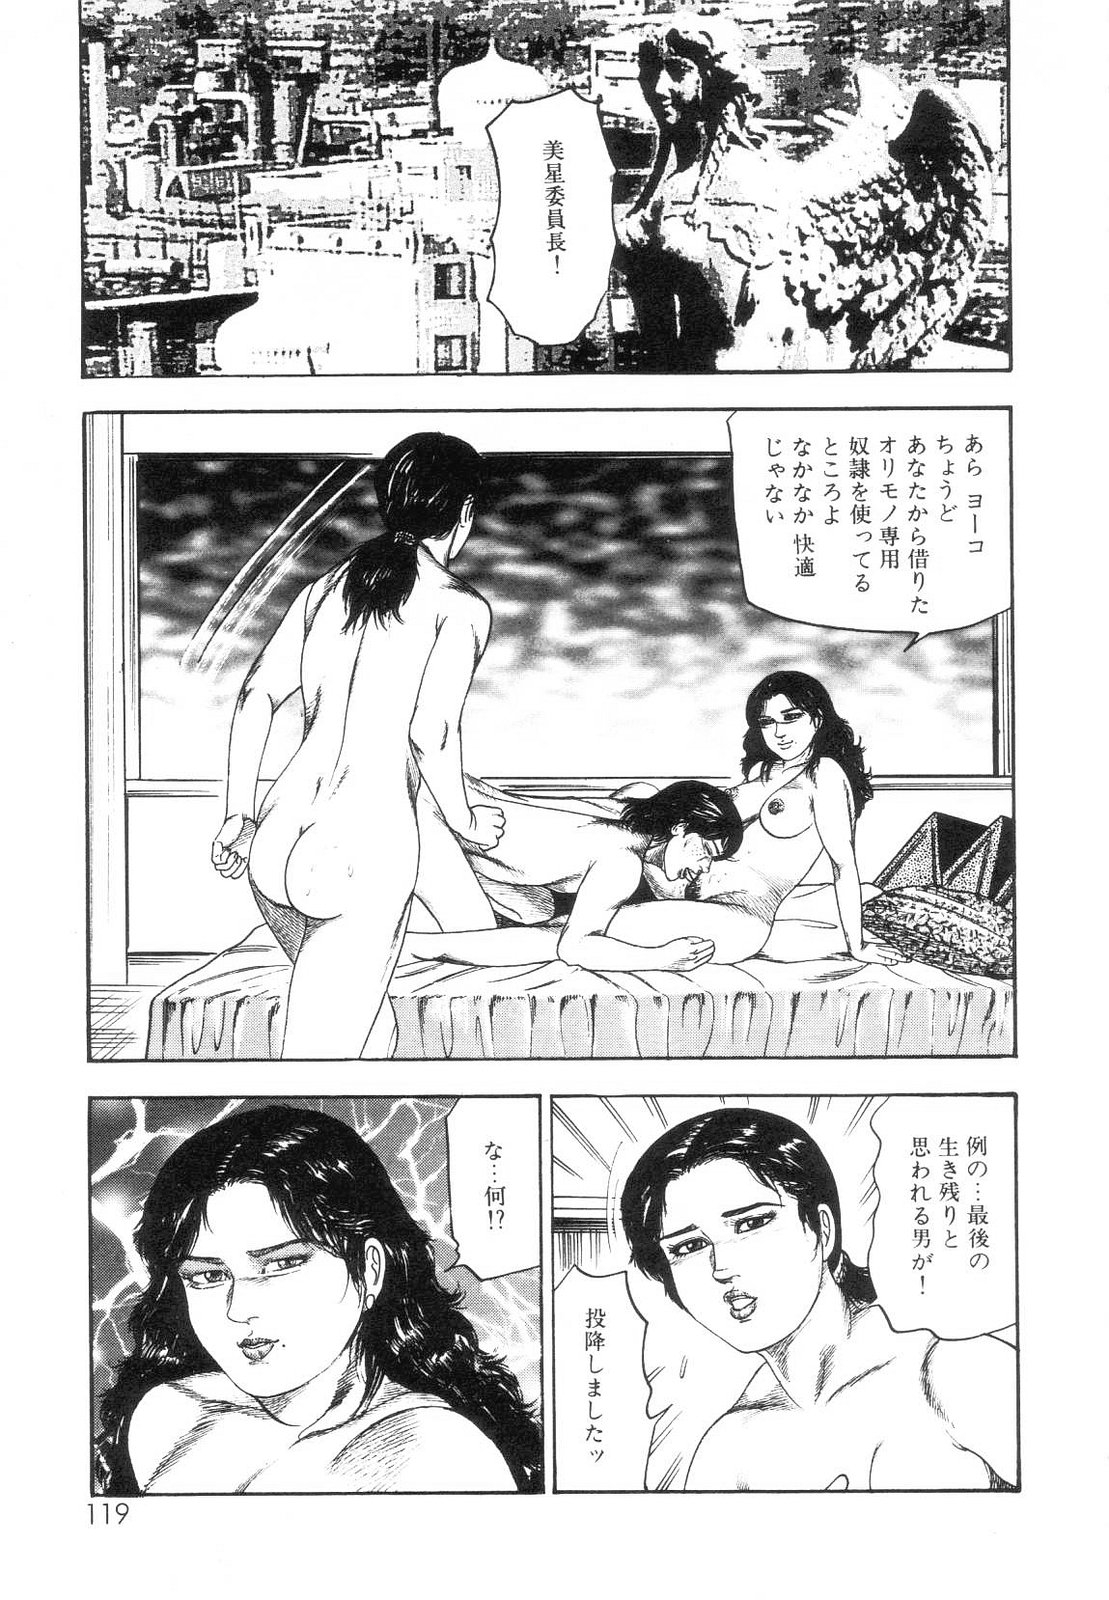 [Sanjou Tomomi] Shiro no Mokushiroku Vol. 7 - Shiiku Ningyou Erika no Shou 120